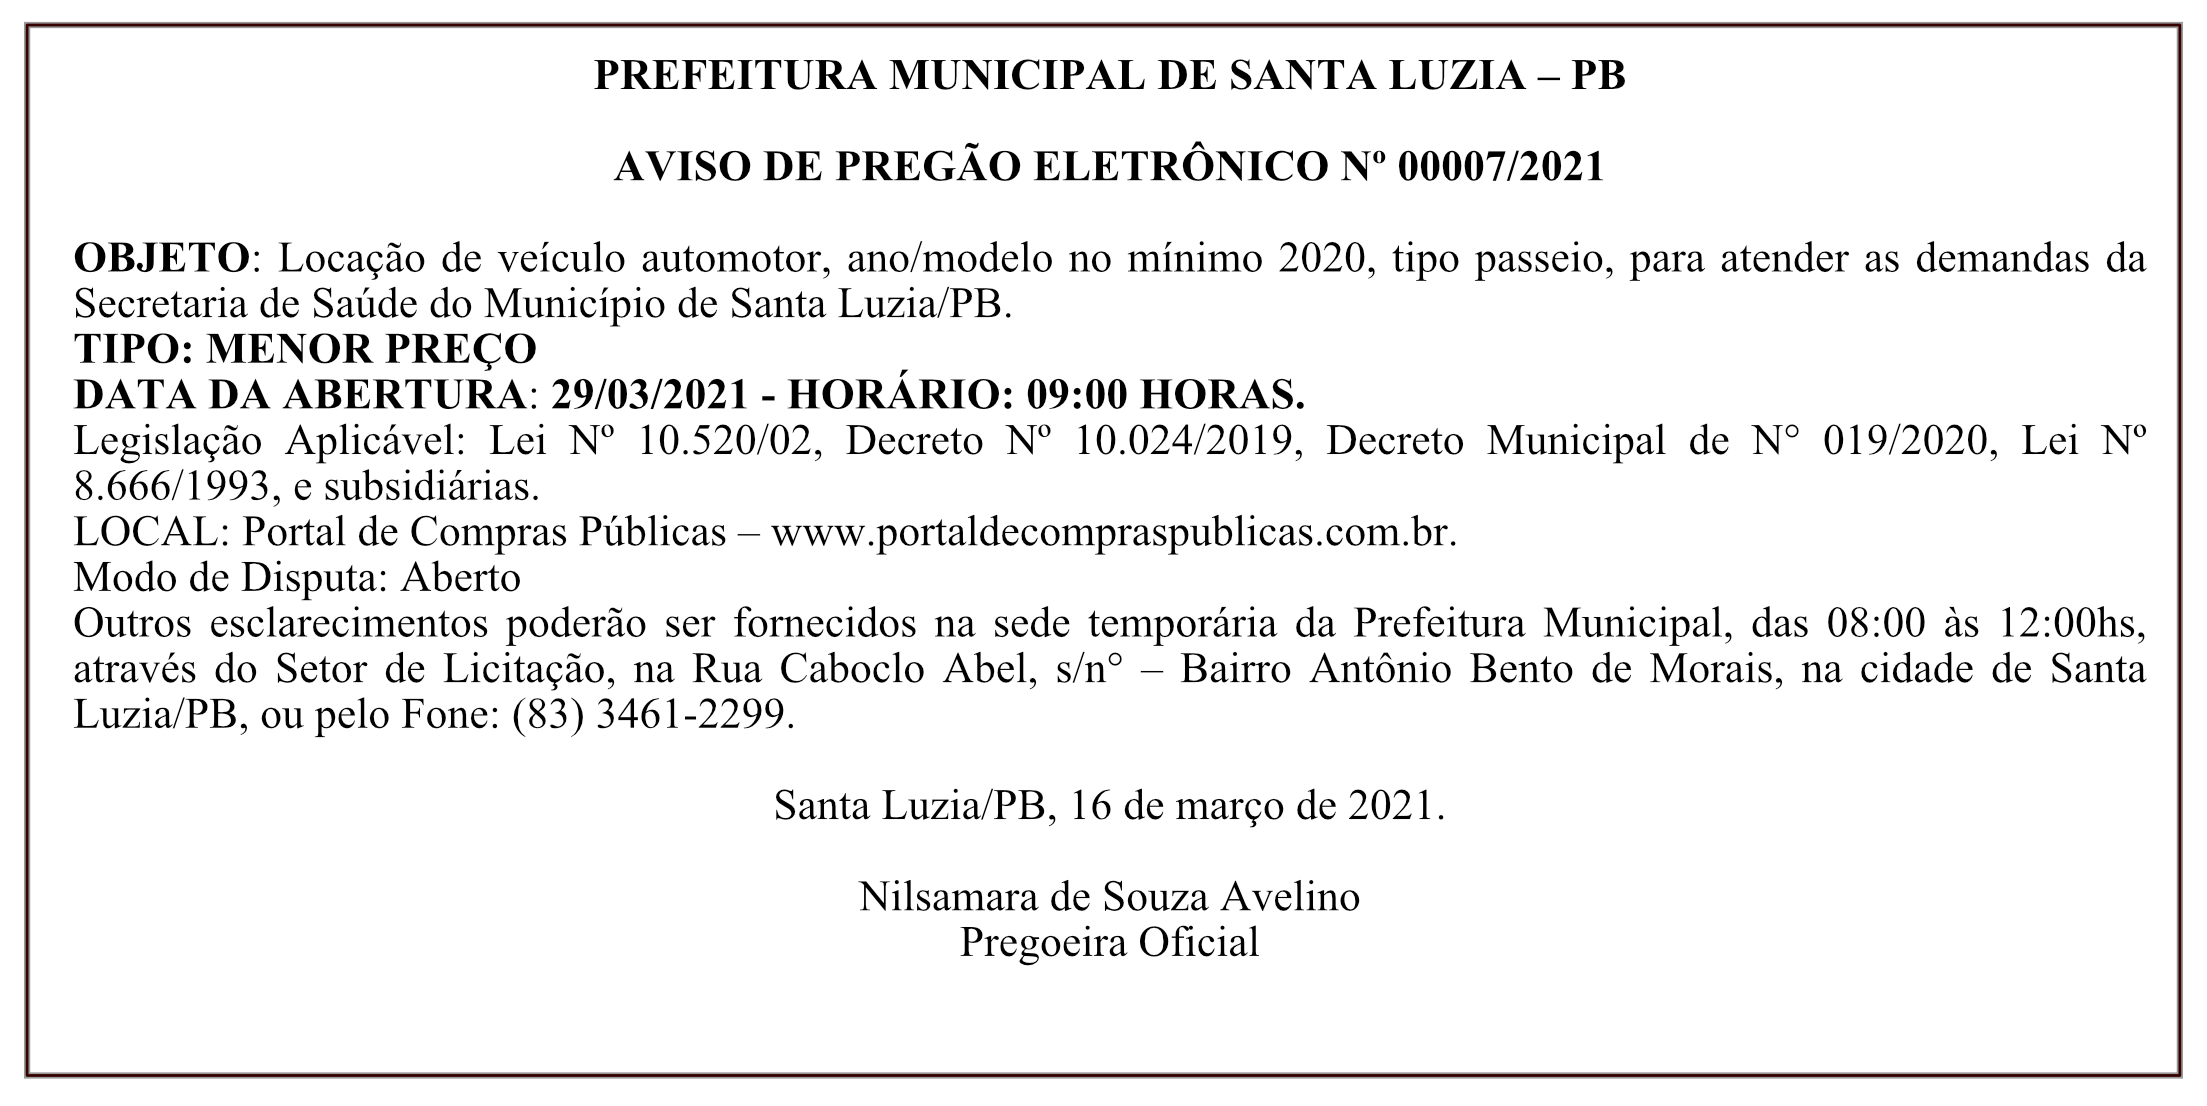 PREFEITURA MUNICIPAL DE SANTA LUZIA – AVISO DE PREGÃO ELETRÔNICO Nº 00007/2021